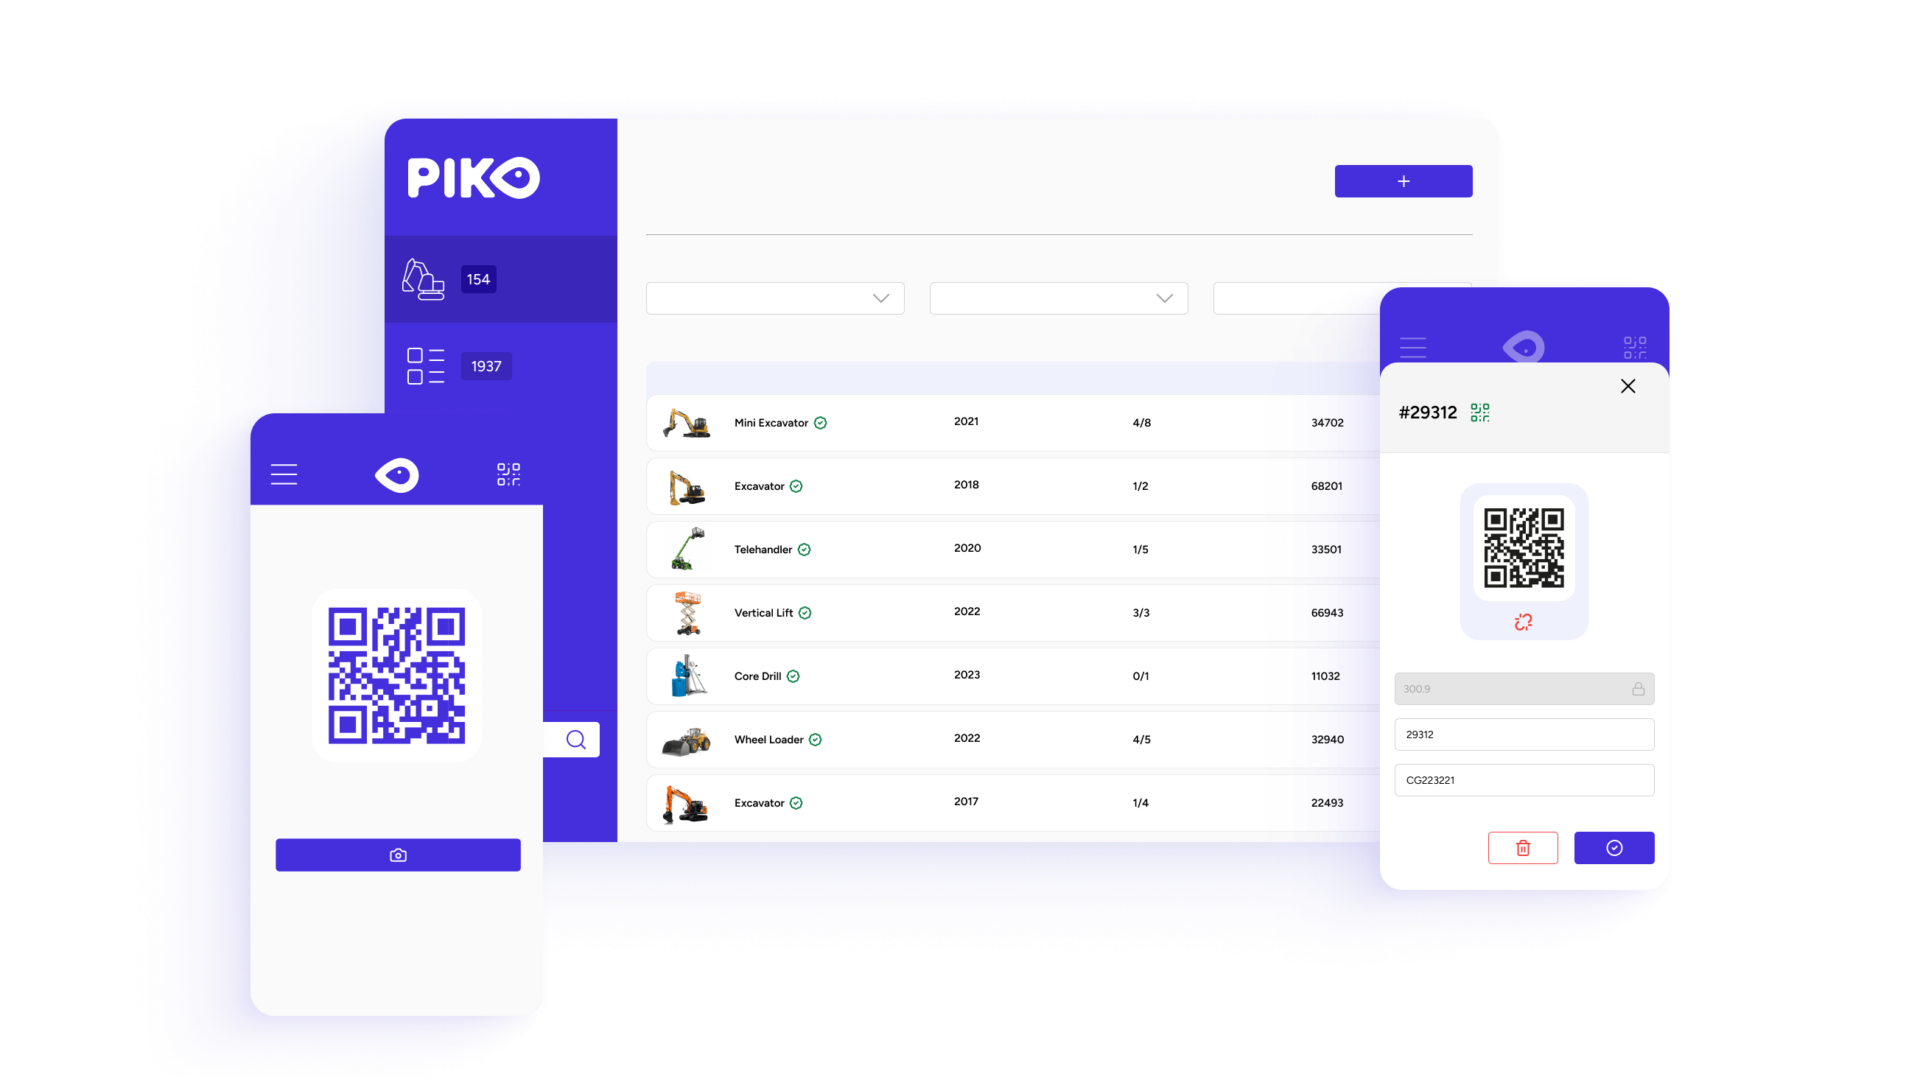 Various screenshots from Piko software